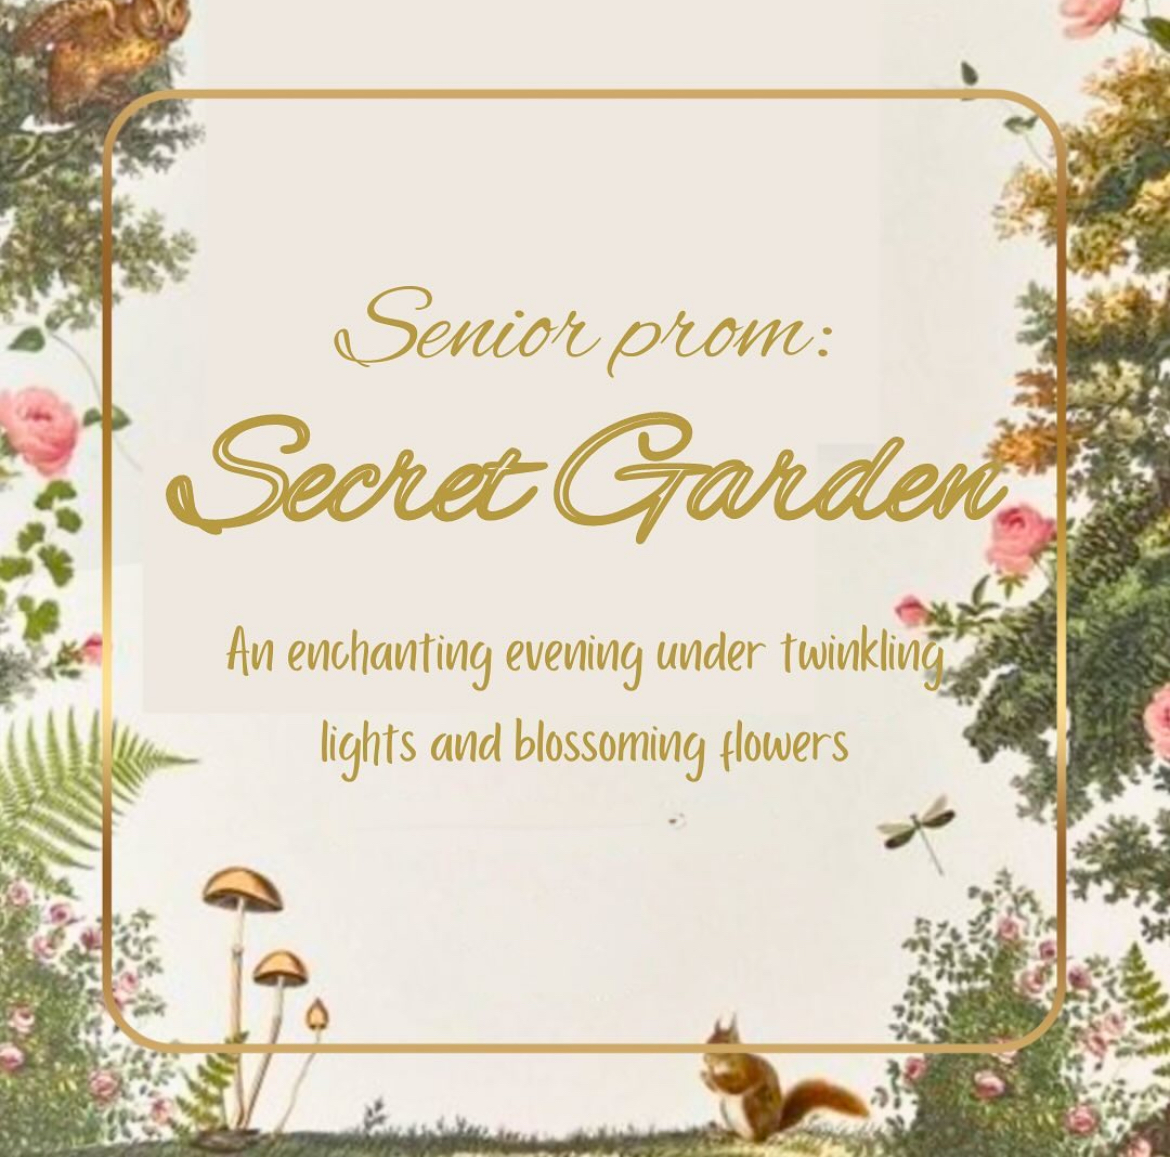 Seniors settle on ‘Secret Garden’ theme